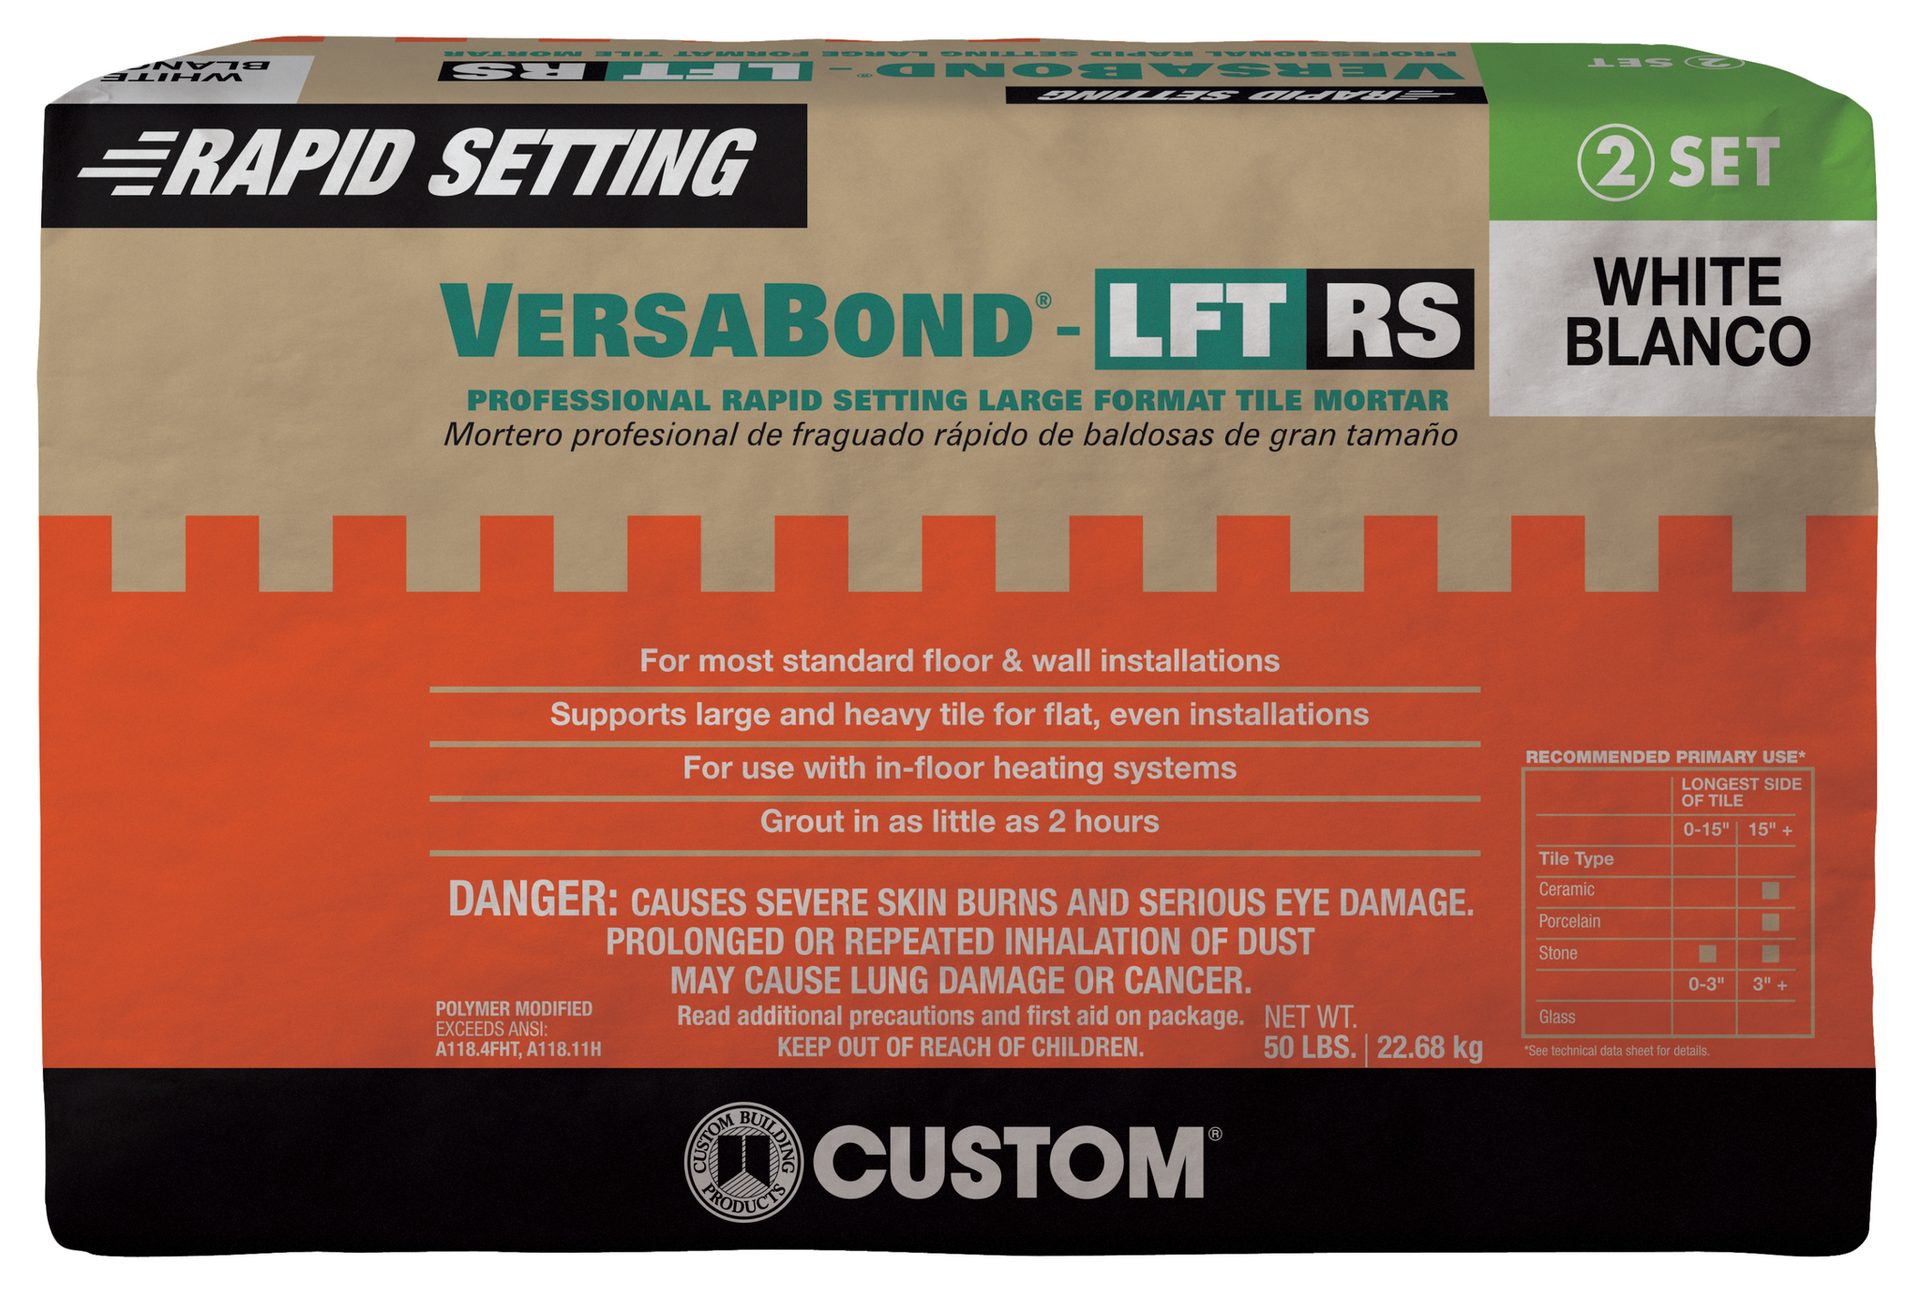 Custom, VersaBond-LFT RS 